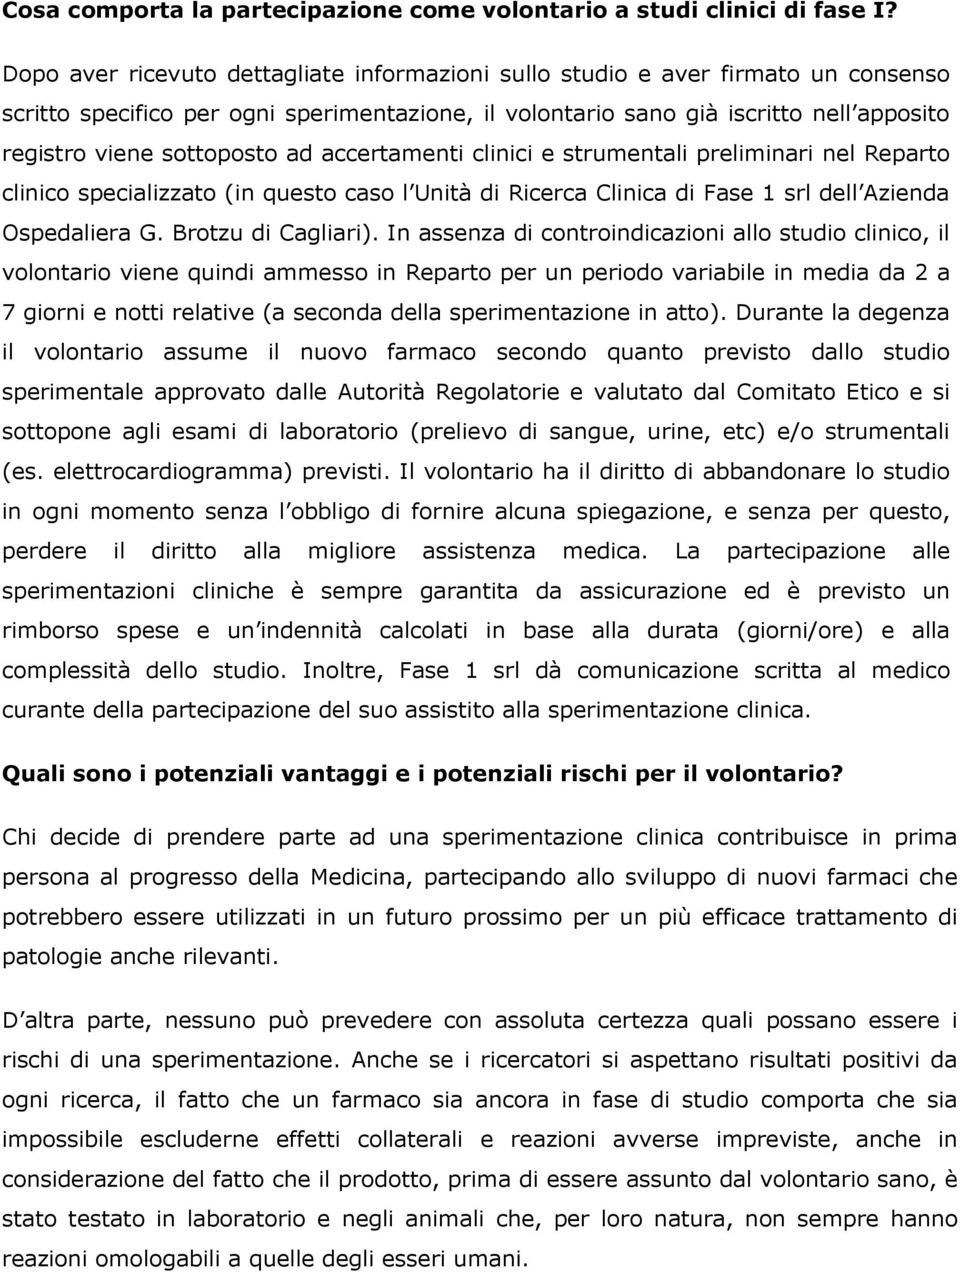 ad accertamenti clinici e strumentali preliminari nel Reparto clinico specializzato (in questo caso l Unità di Ricerca Clinica di Fase 1 srl dell Azienda Ospedaliera G. Brotzu di Cagliari).